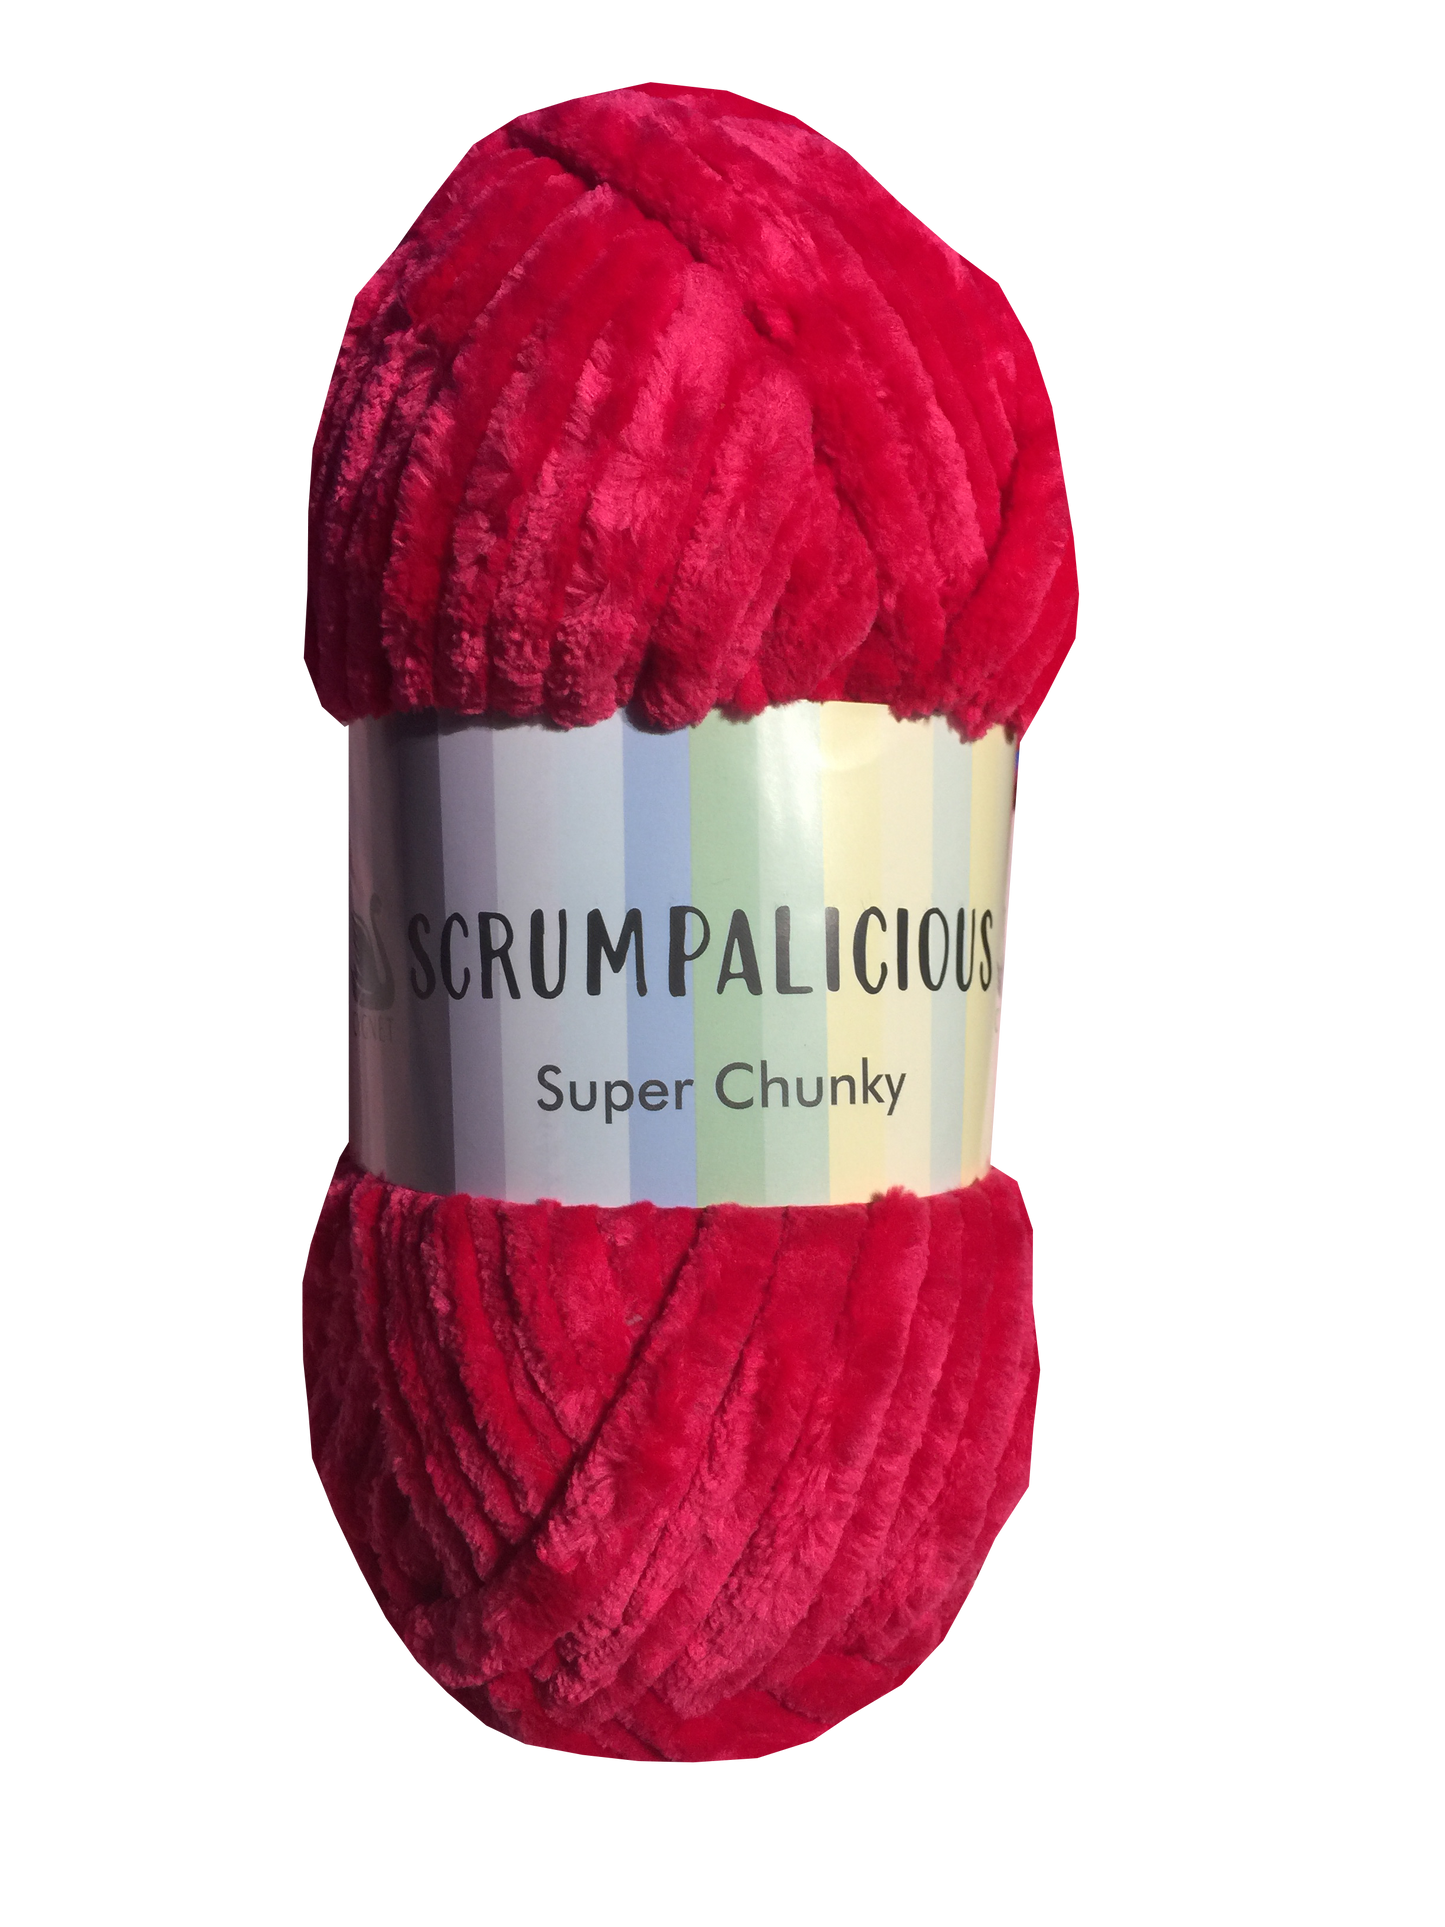 Cherry Pink - Scrumpalicious - Cygnet Yarn